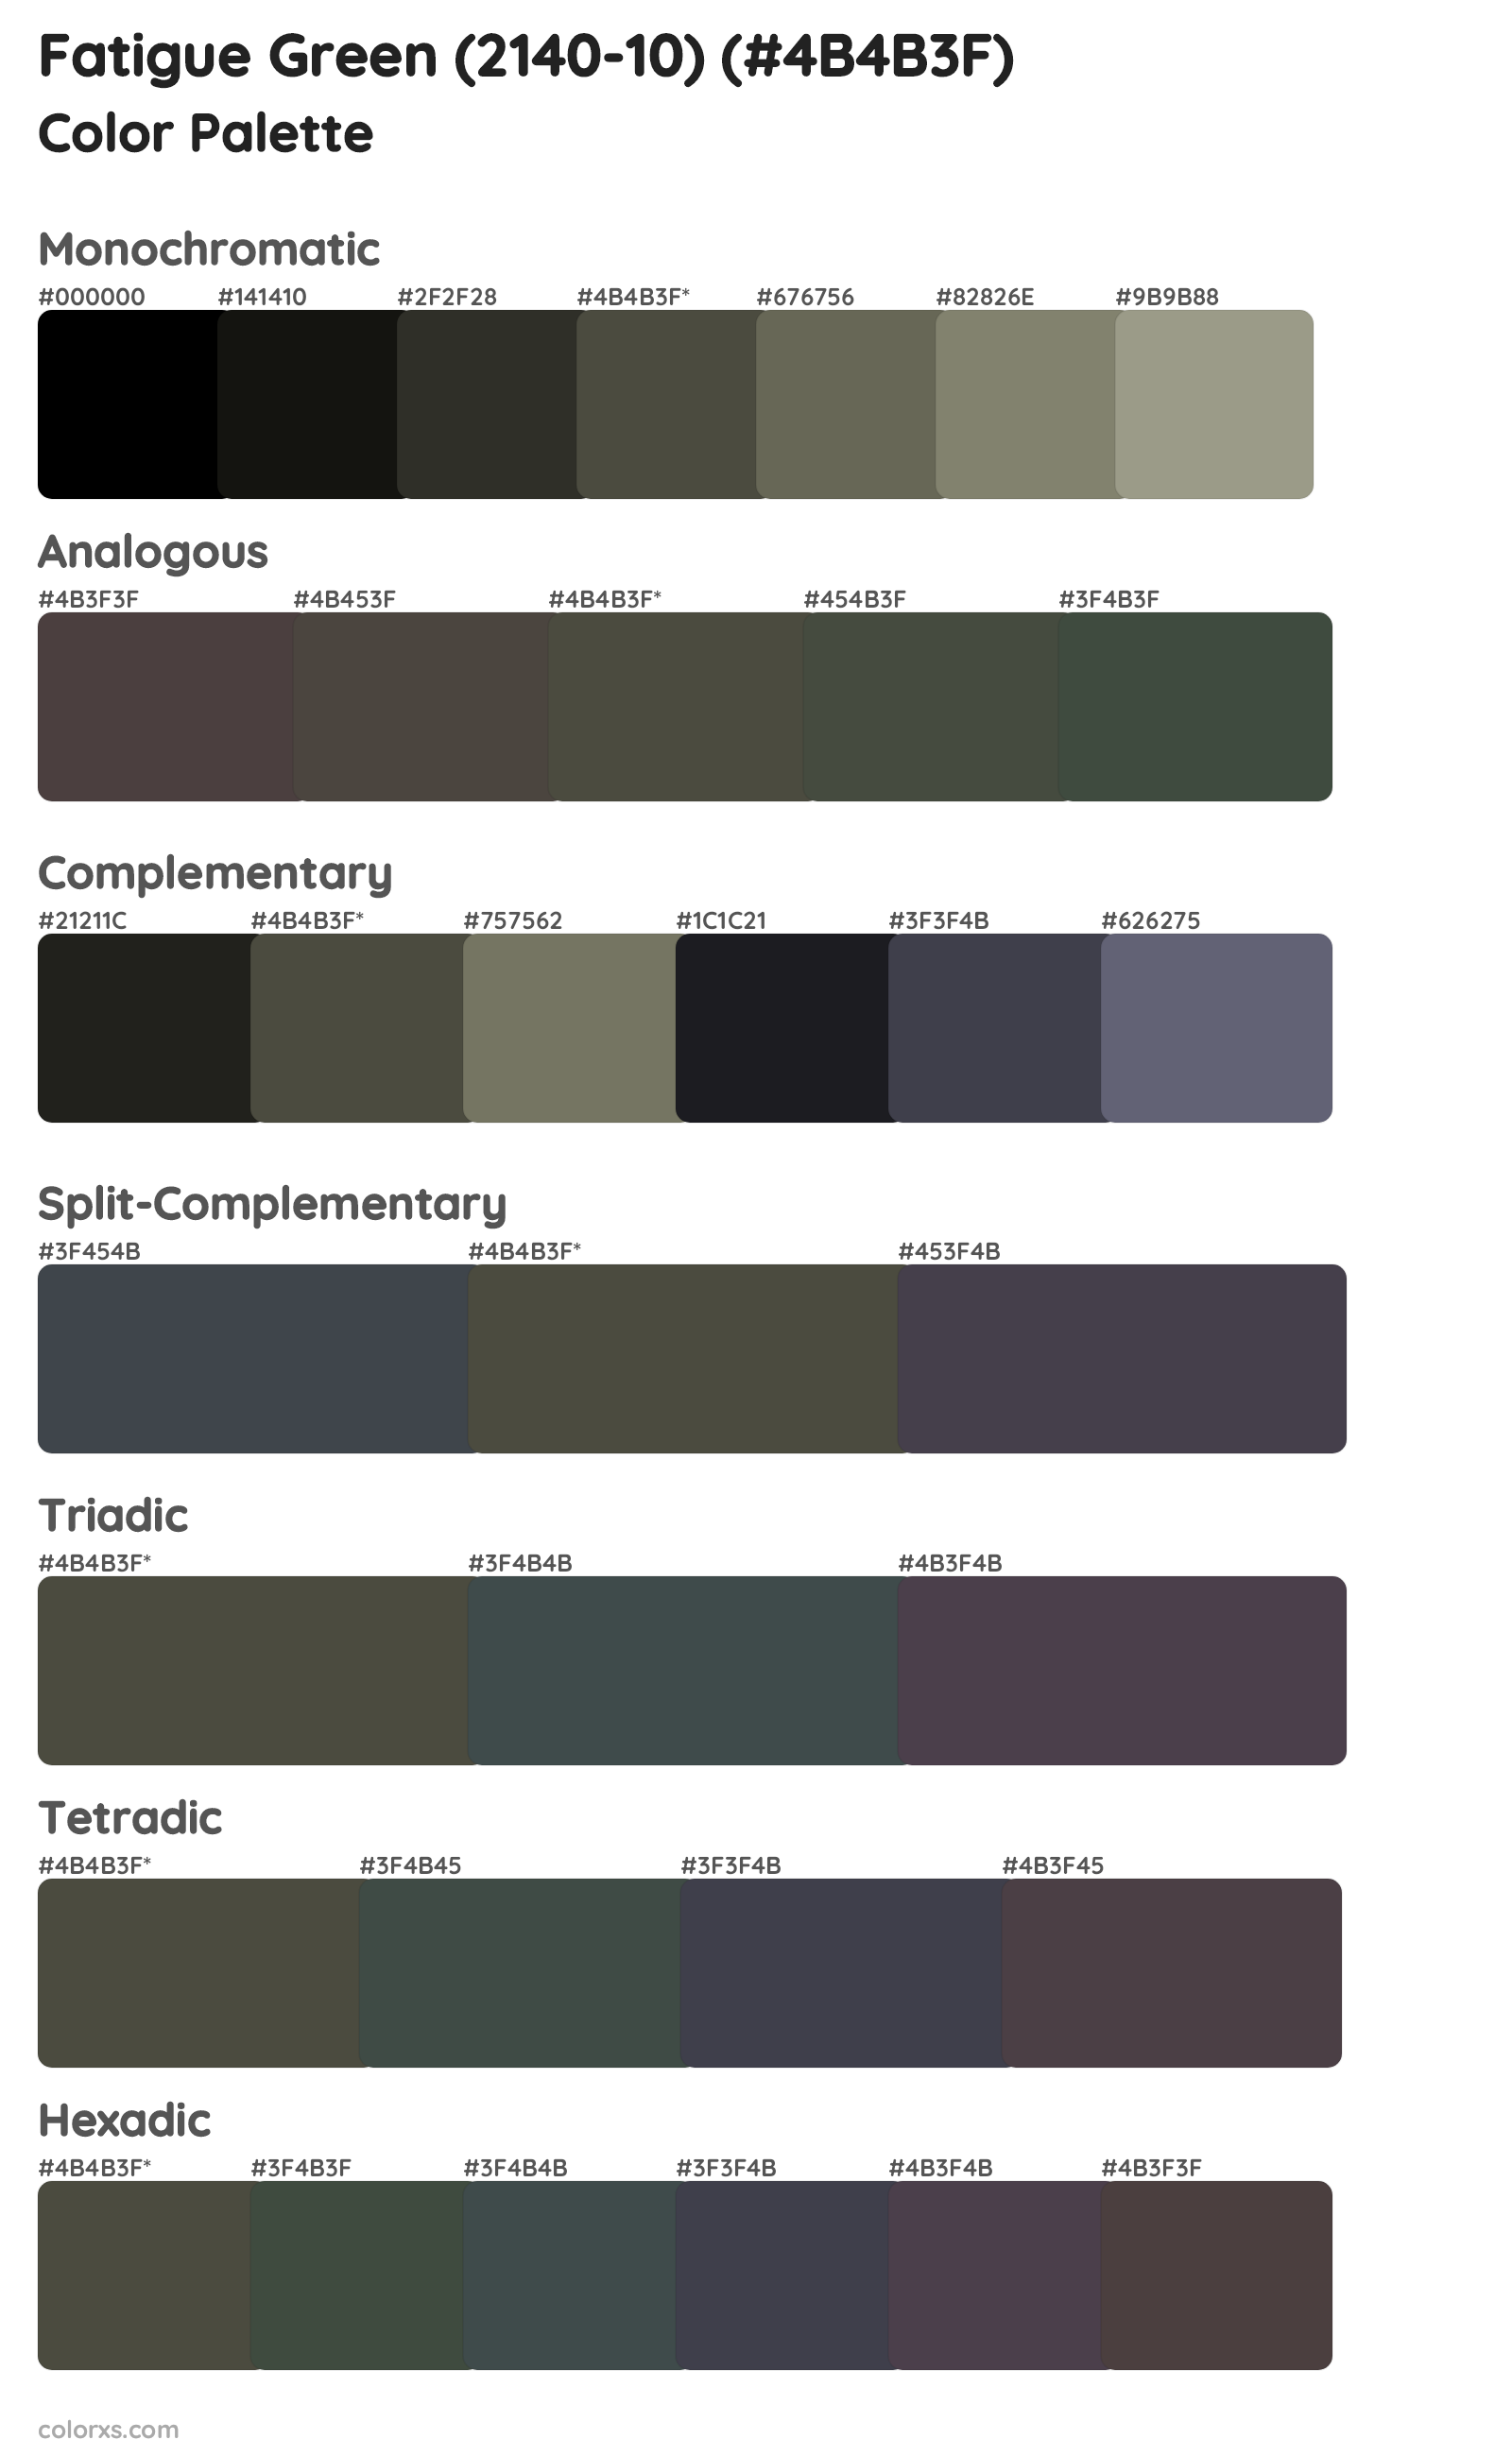 Fatigue Green (2140-10) Color Scheme Palettes